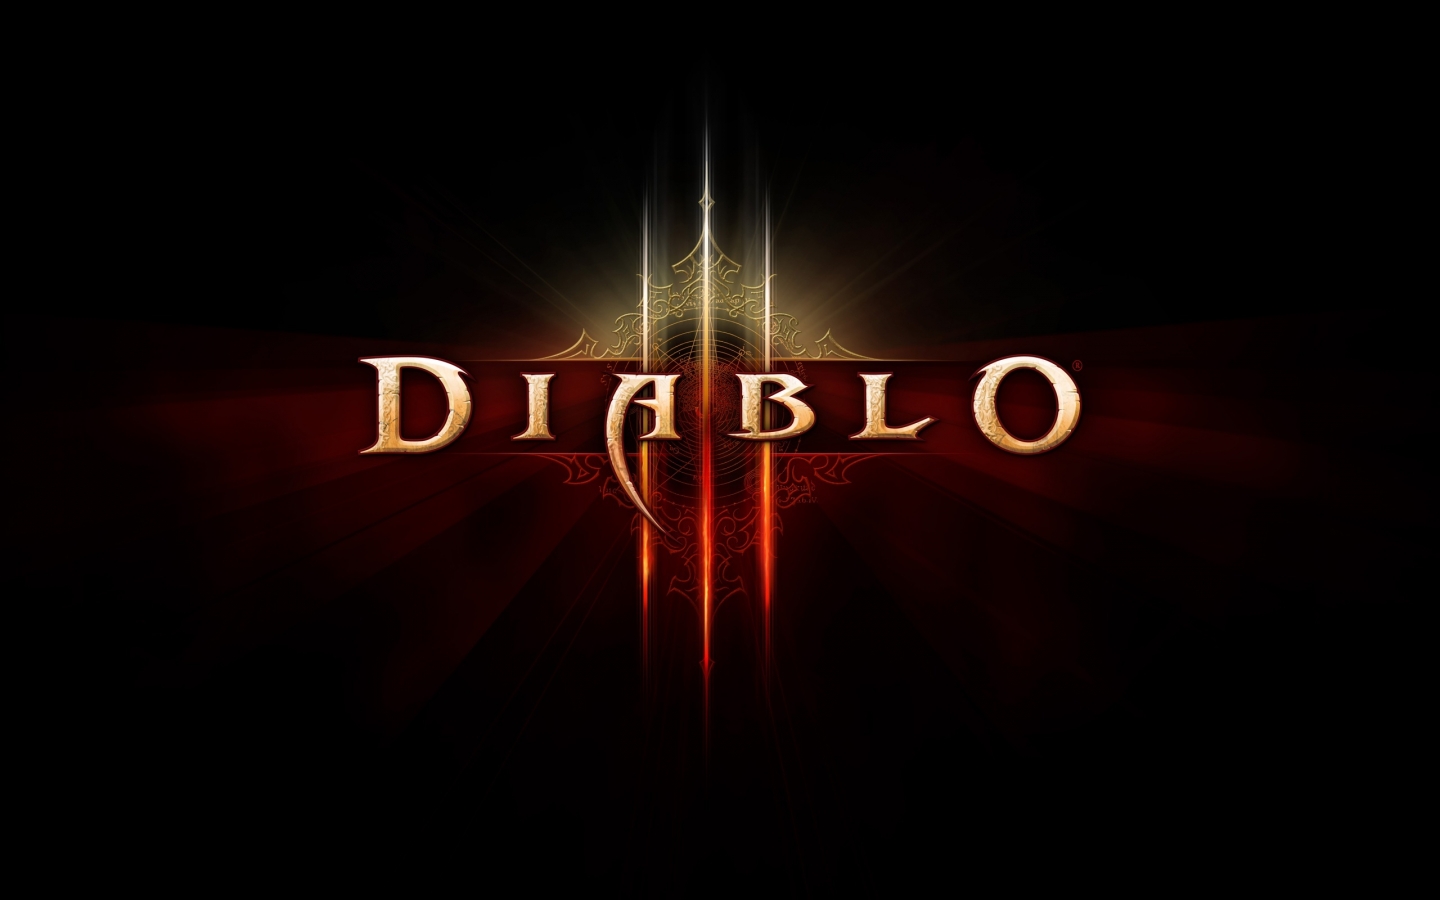 Diablo 3 Logo for 1440 x 900 widescreen resolution